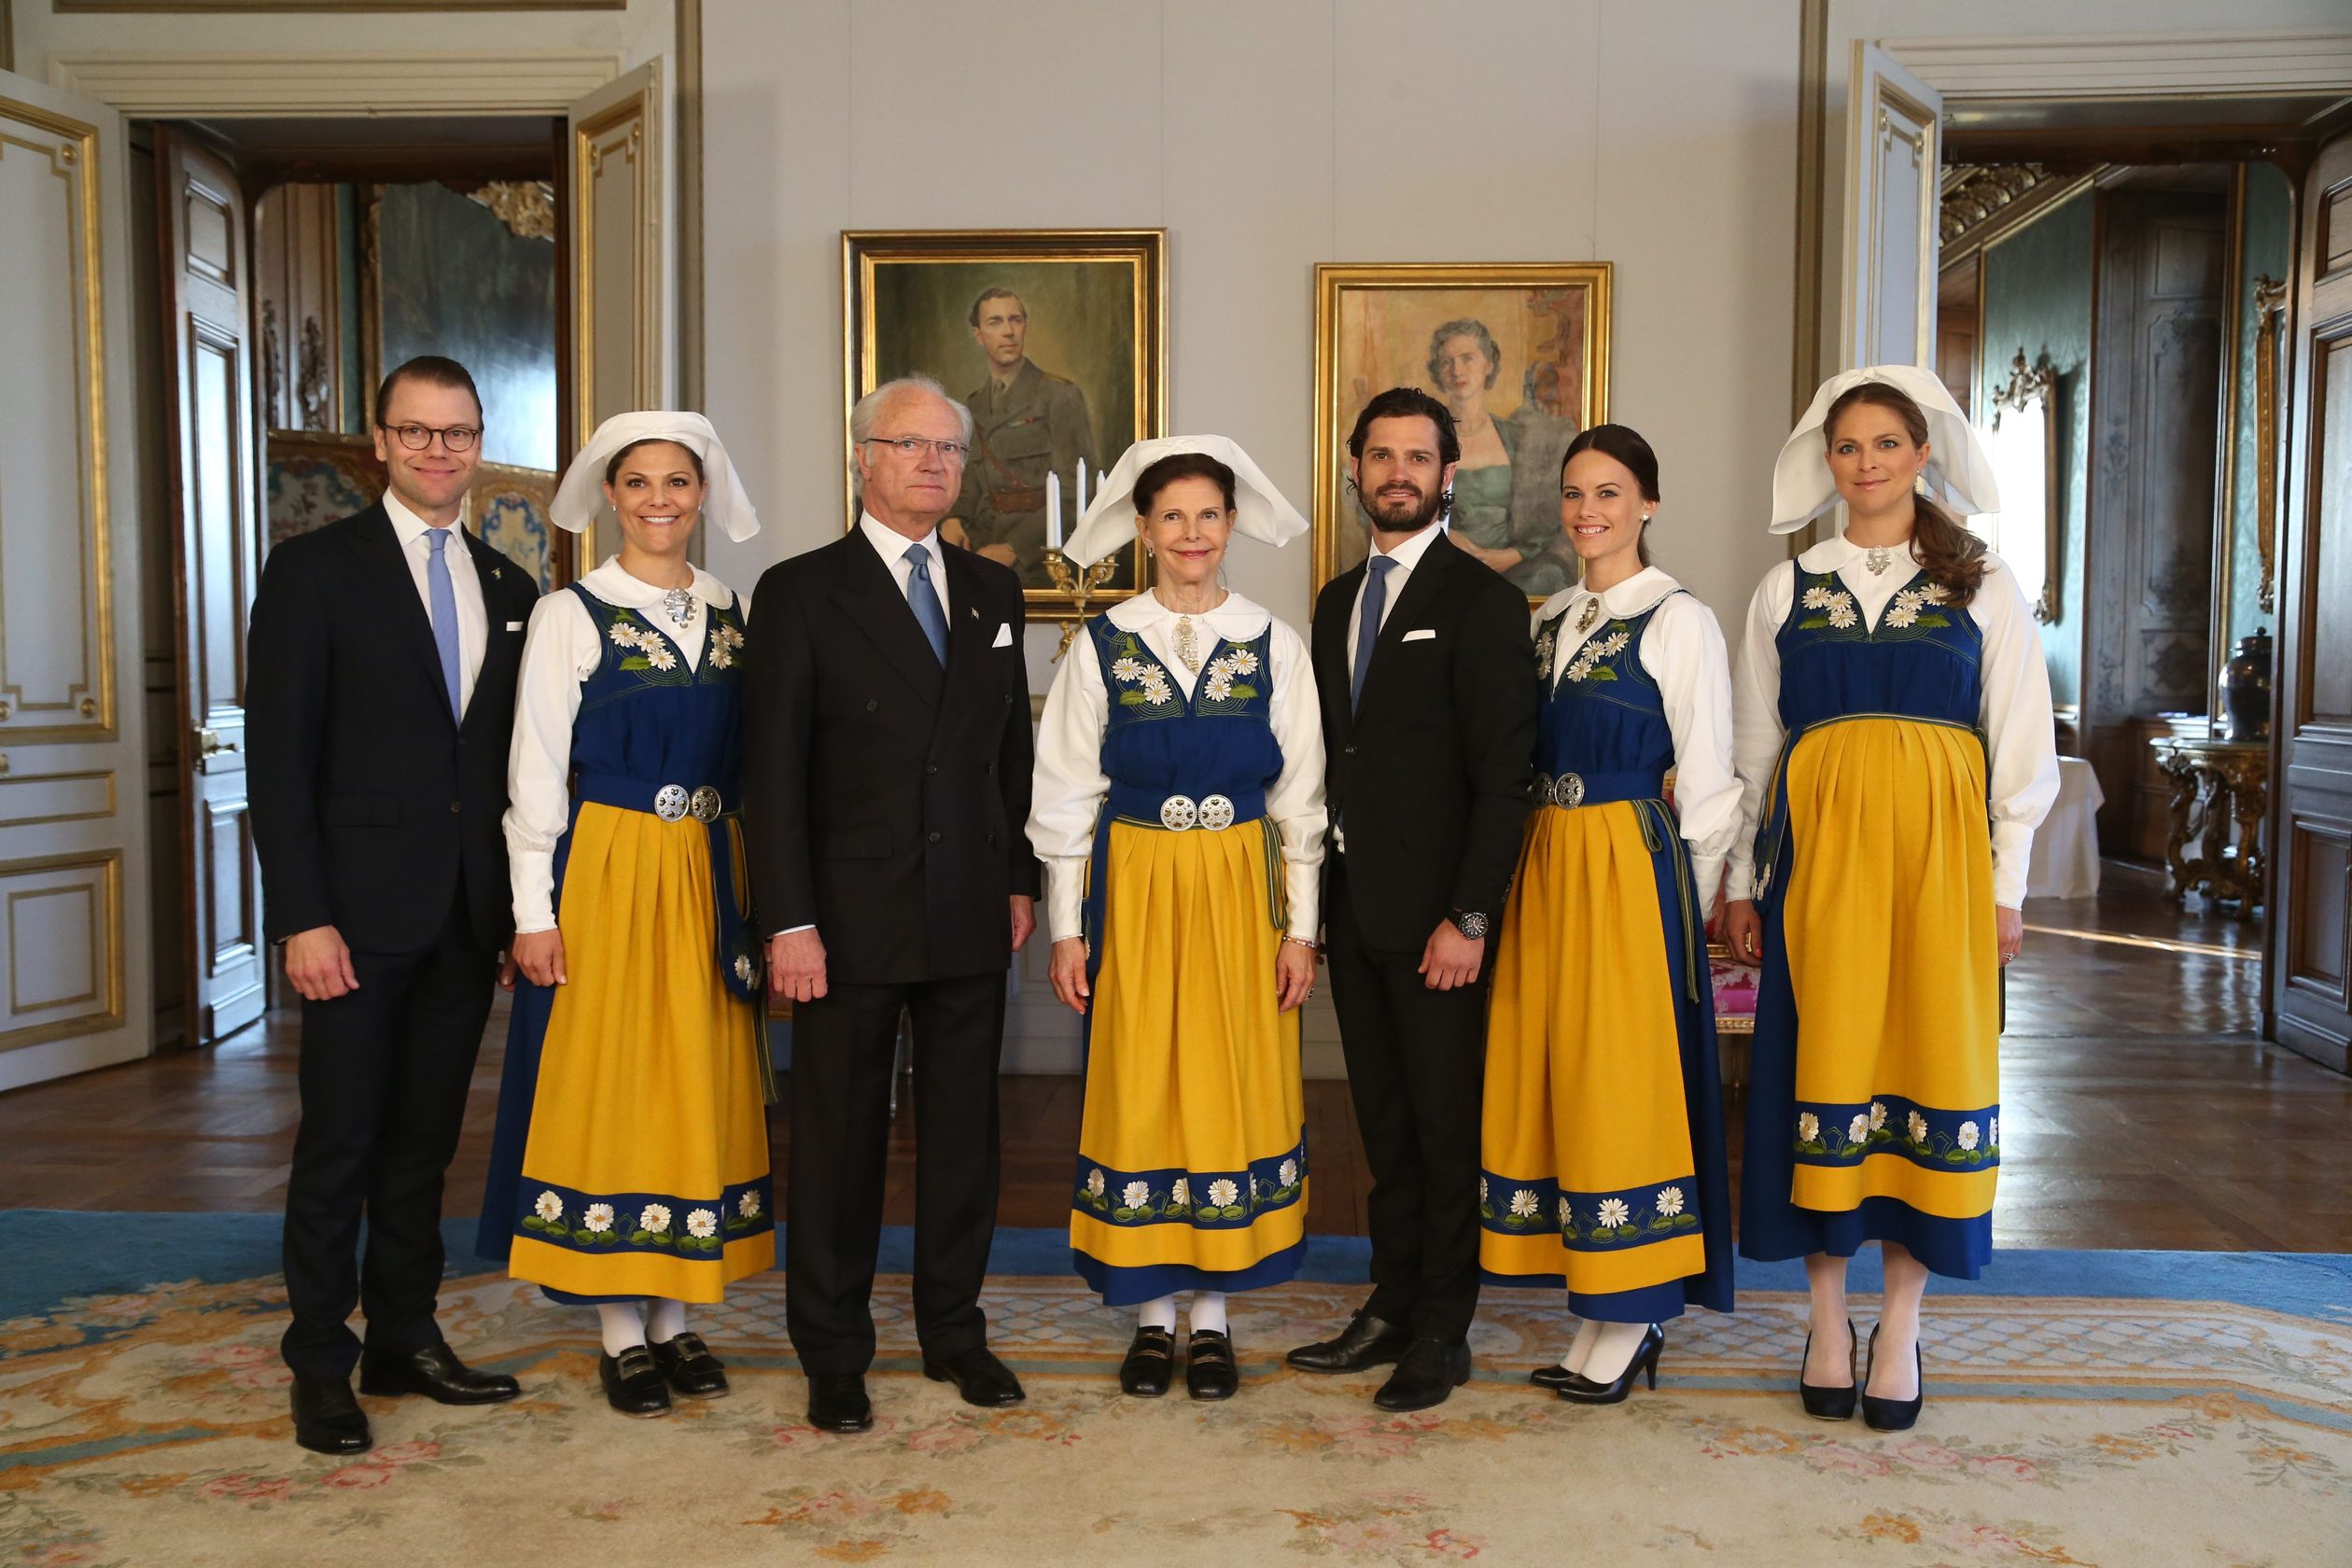 Swedish_family_national_day_Sweden_2015.jpg